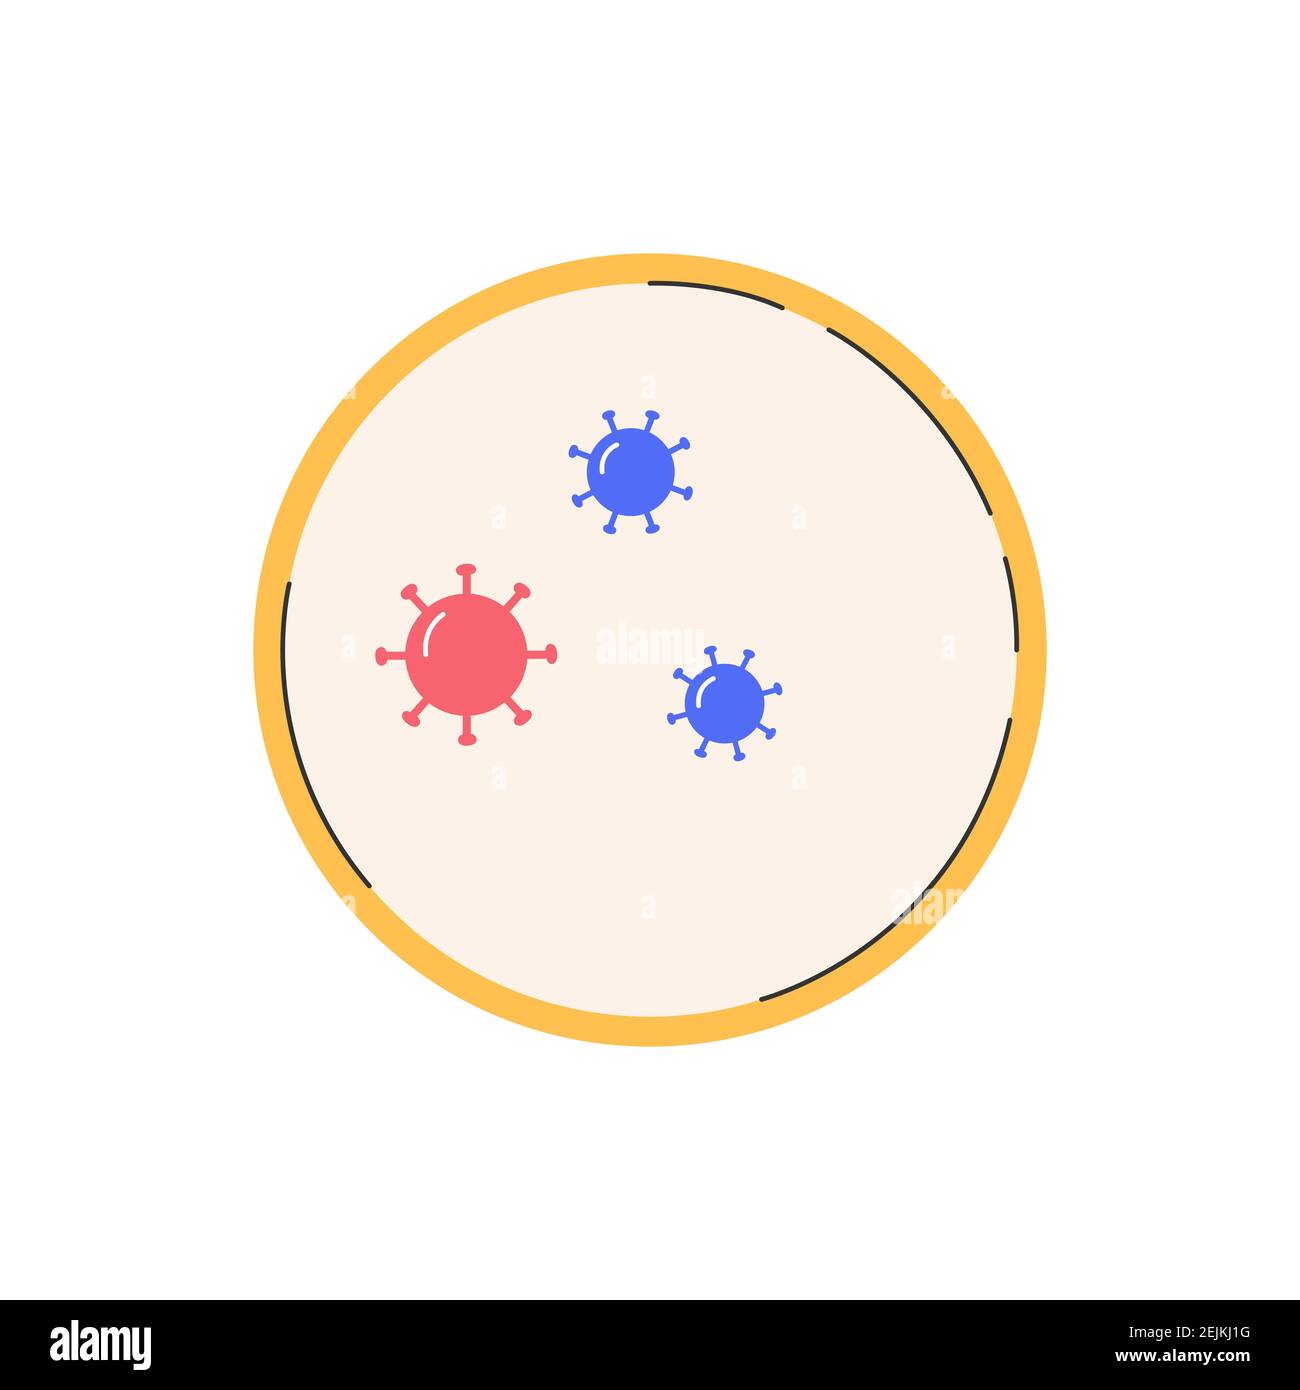 Coronaviruses micro-organisms in Petri dish. Stock Vector